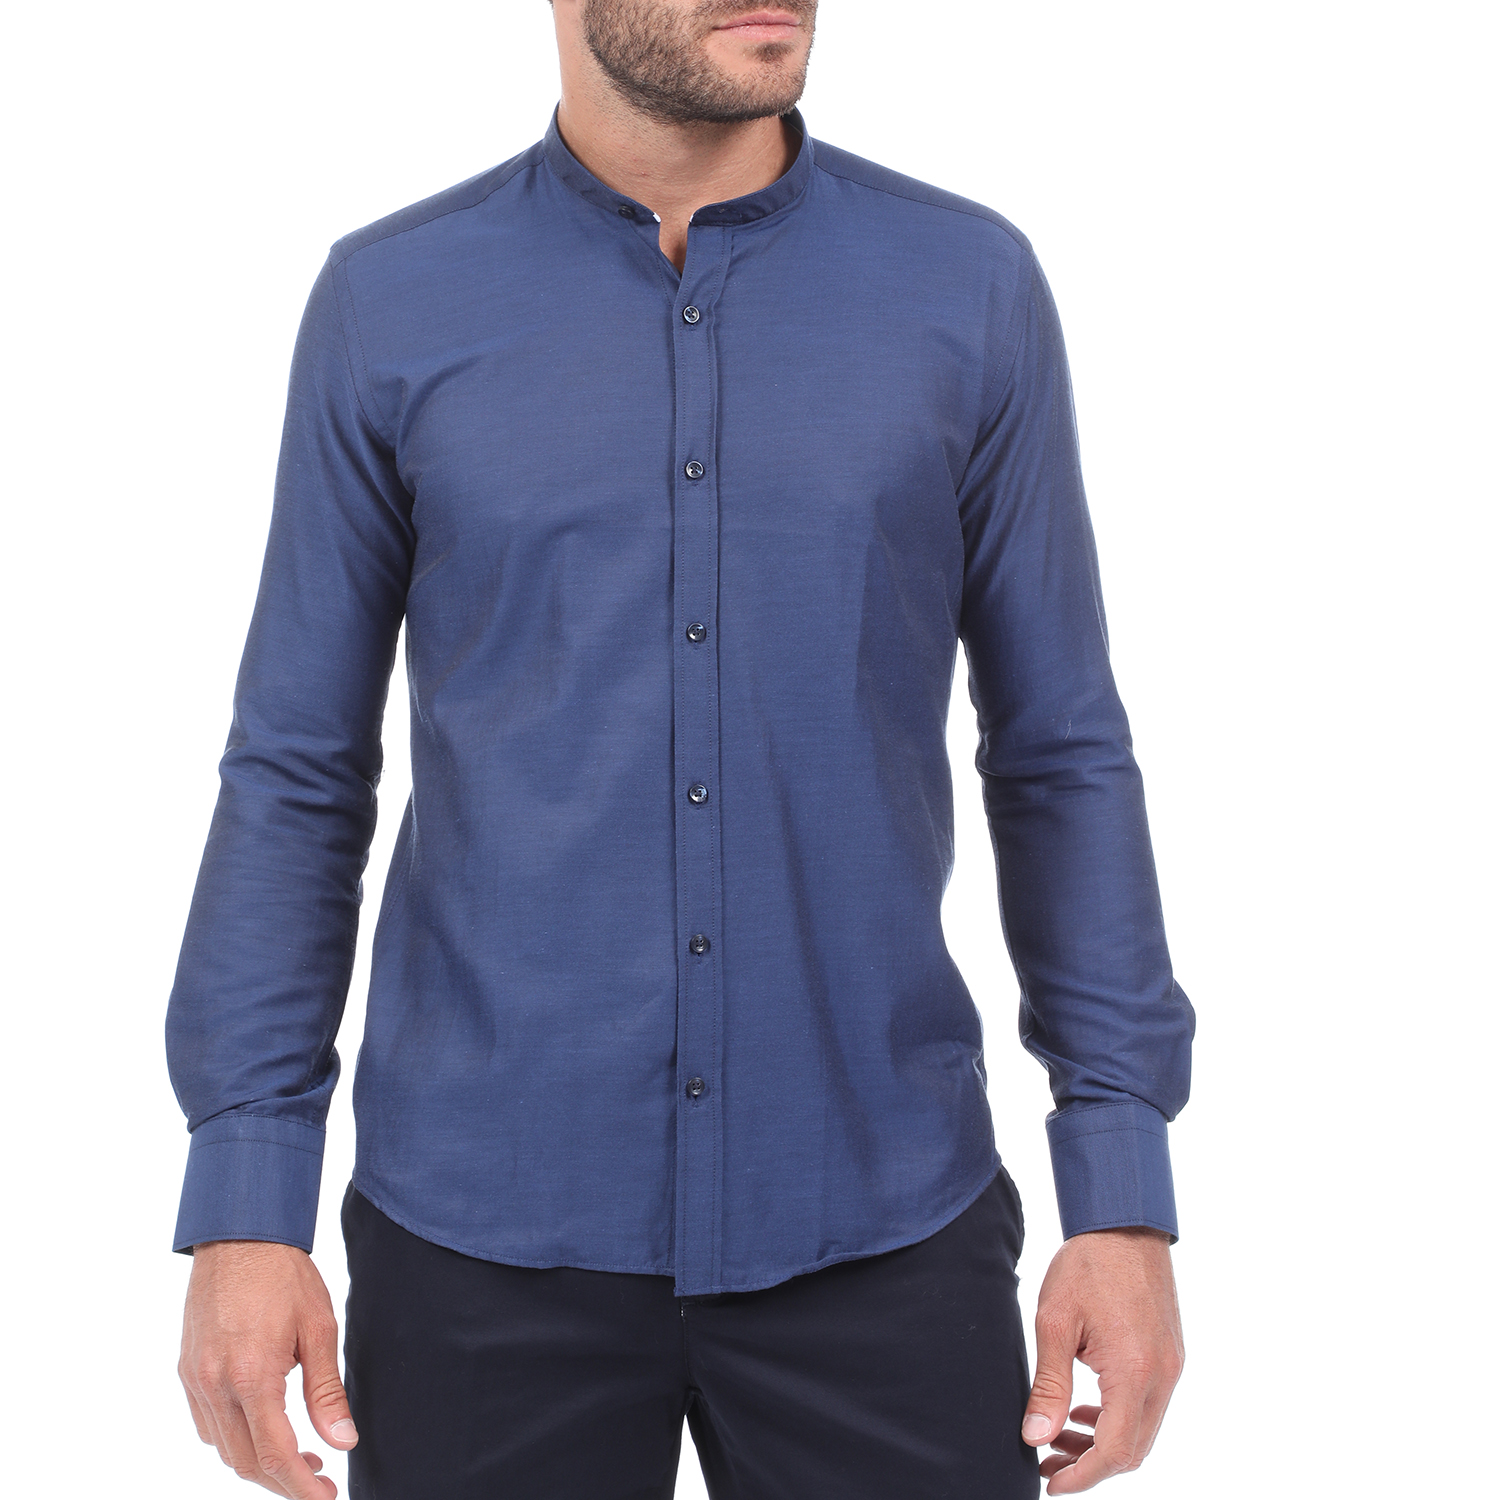 Ανδρικά/Ρούχα/Πουκάμισα/Μακρυμάνικα MARTIN & CO - Ανδρικό πουκάμισο MARTIN & CO SLIM FIT MAO μπλε